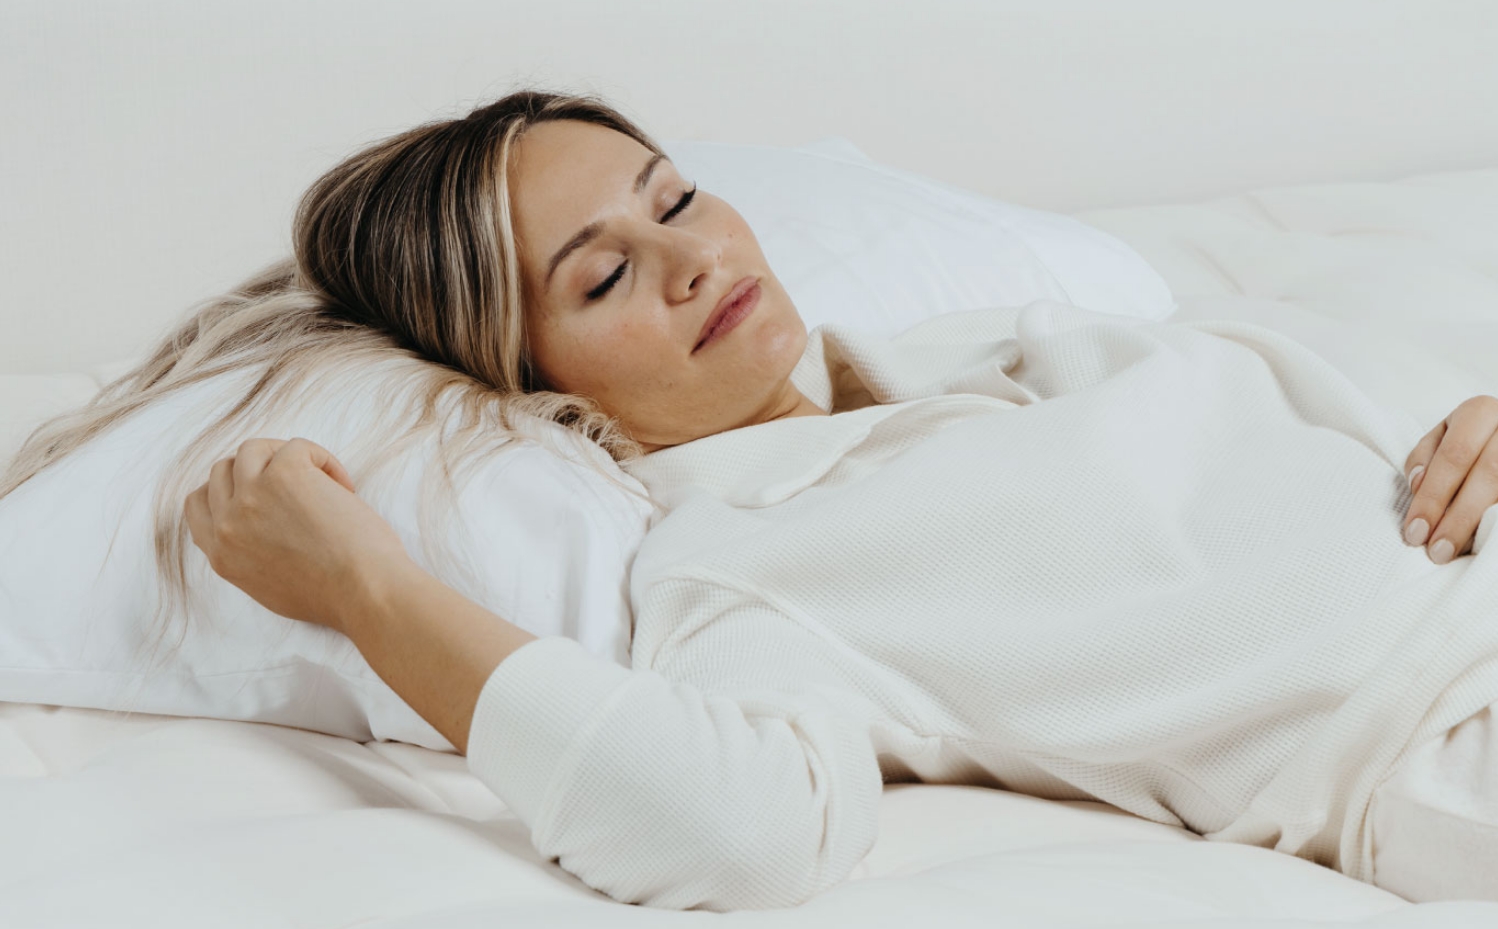 Healthy Sleep Zone sleep awareness month